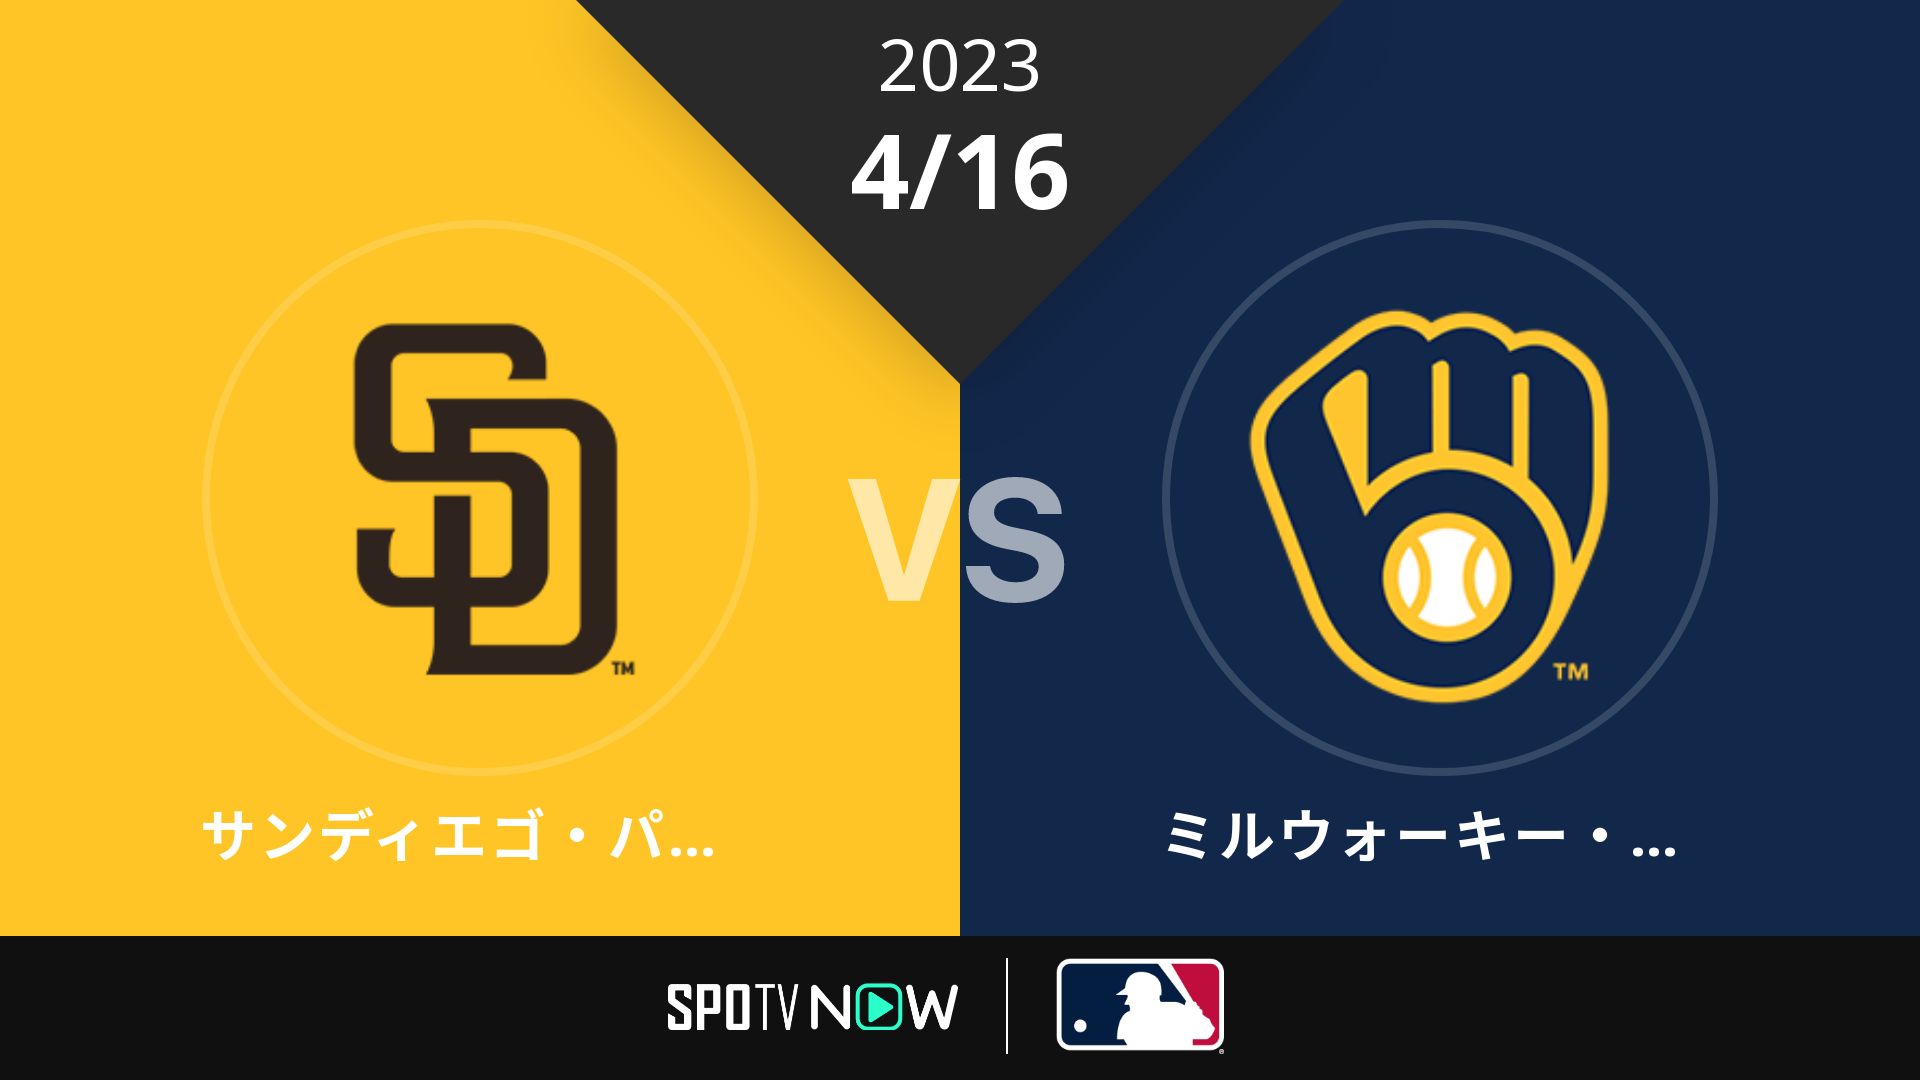 2023/4/16 パドレス vs ブリュワーズ [MLB]